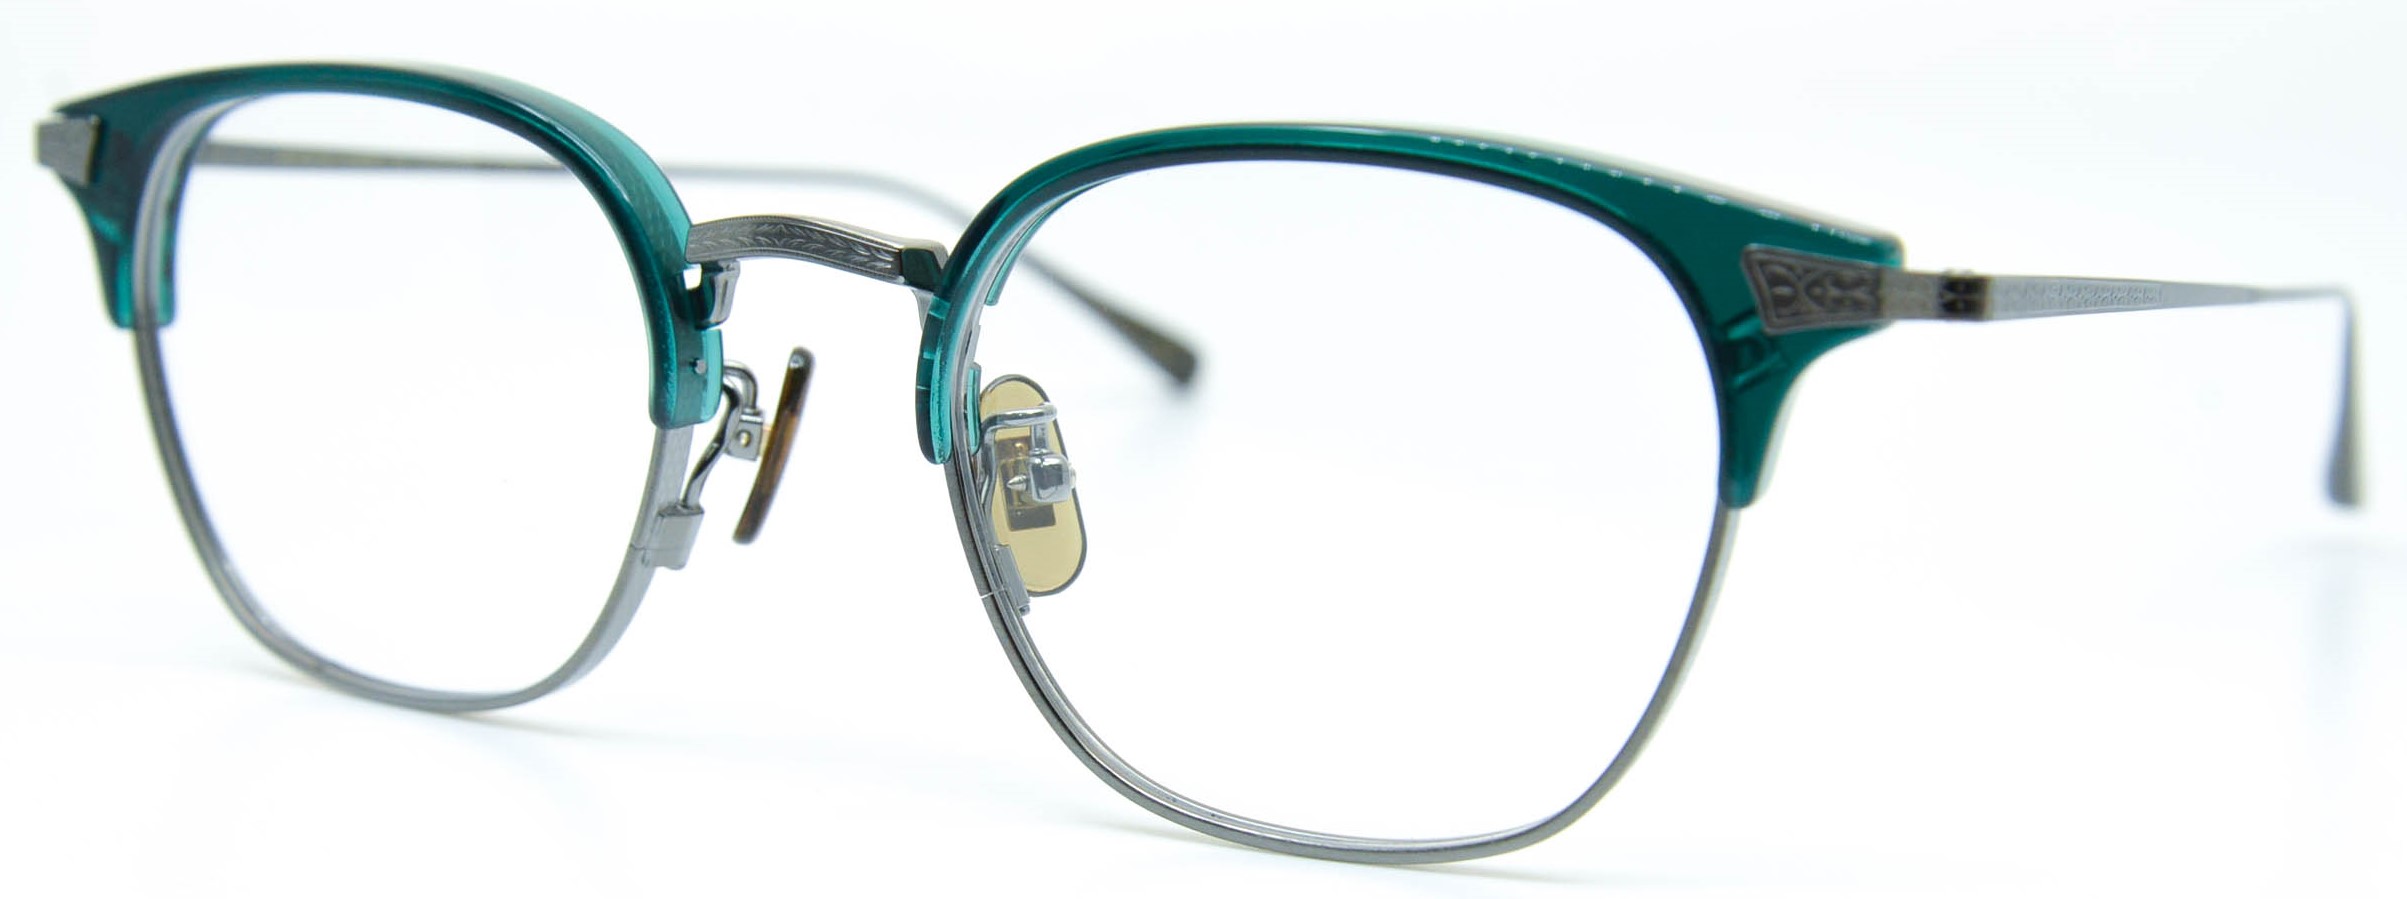 眼鏡のカラータイプC-5 Green/Gray